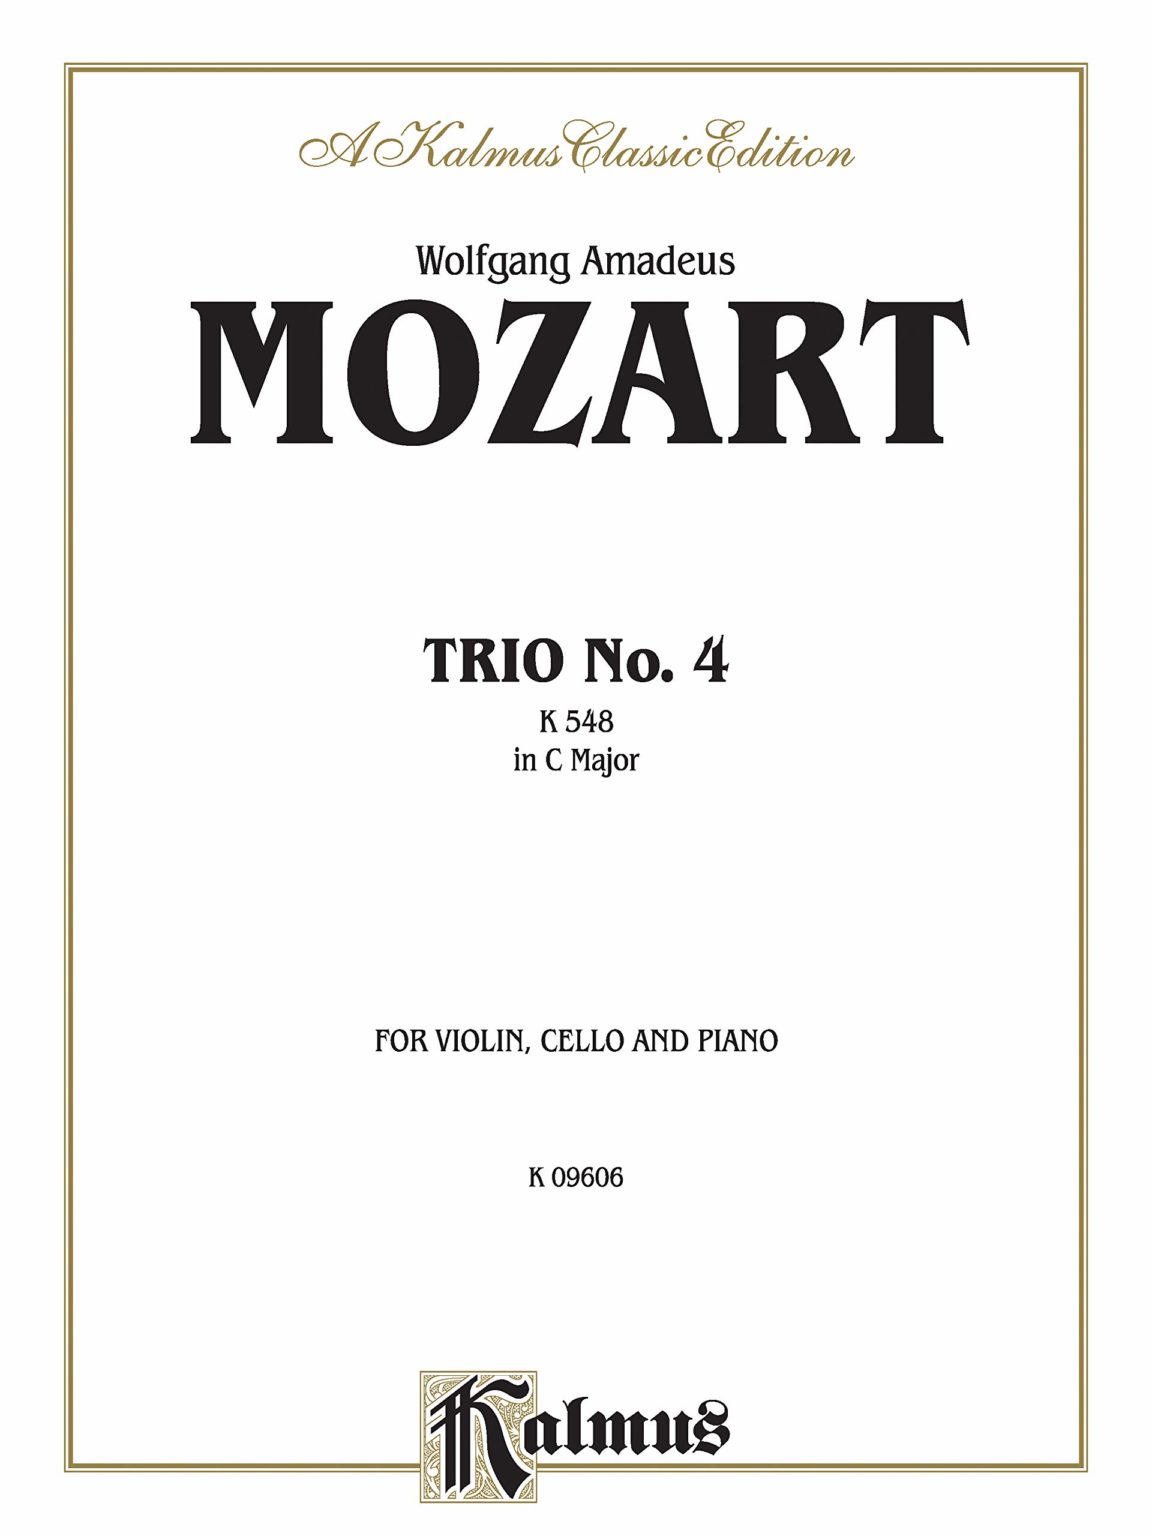 Trio No.IV. Wolfgang Amadeus Mozart